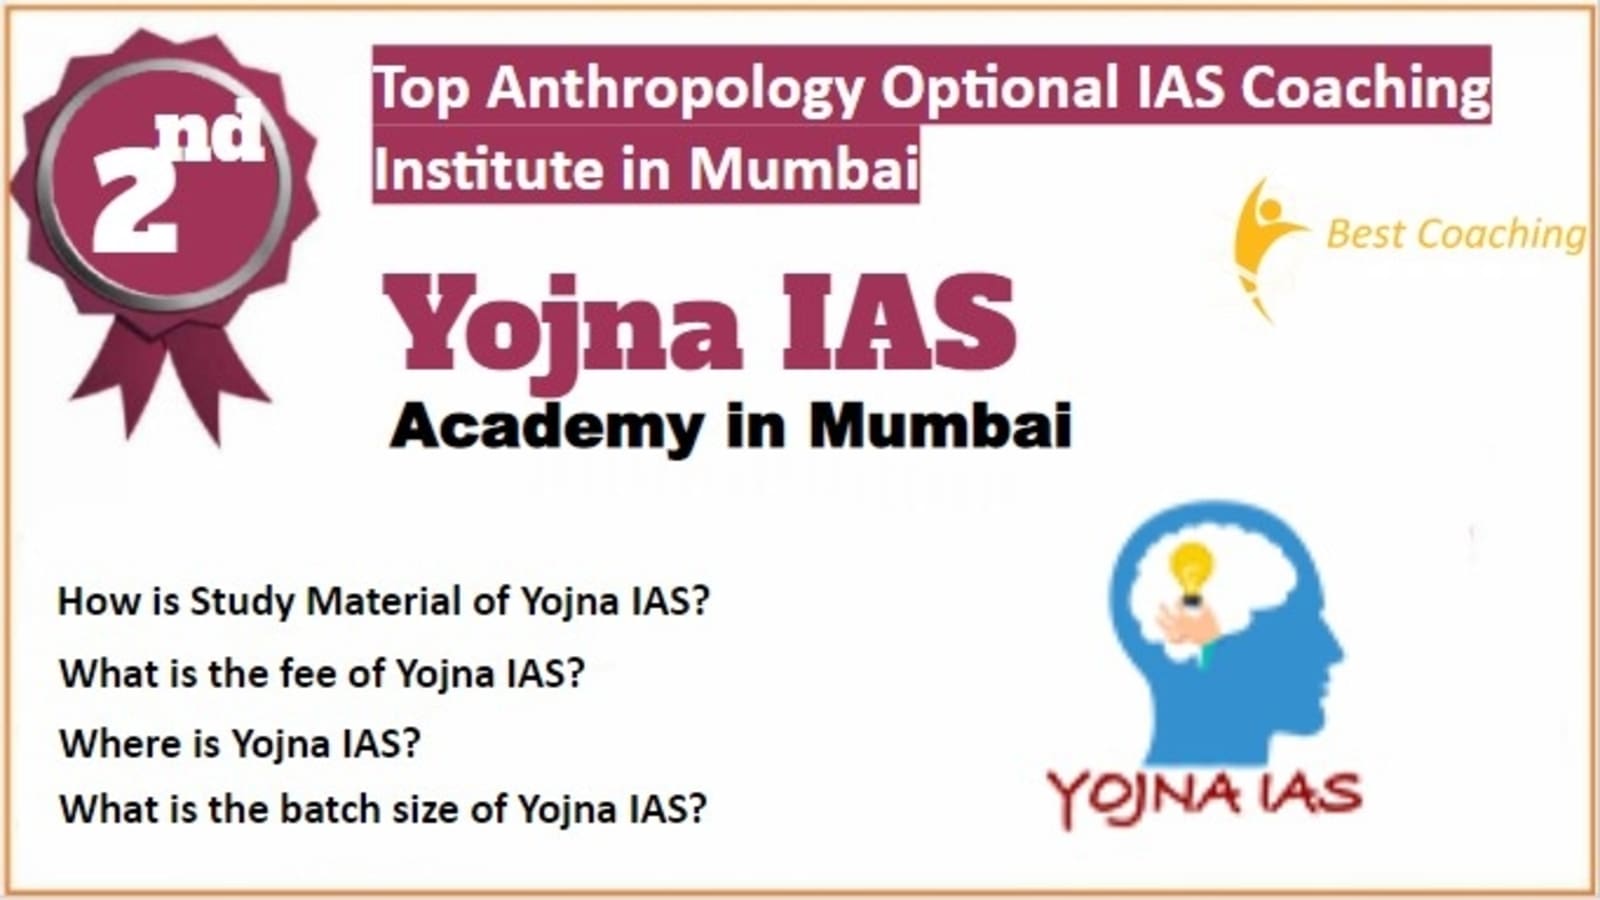 Rank 2 Best Anthropology Optional IAS Coaching in Mumbai